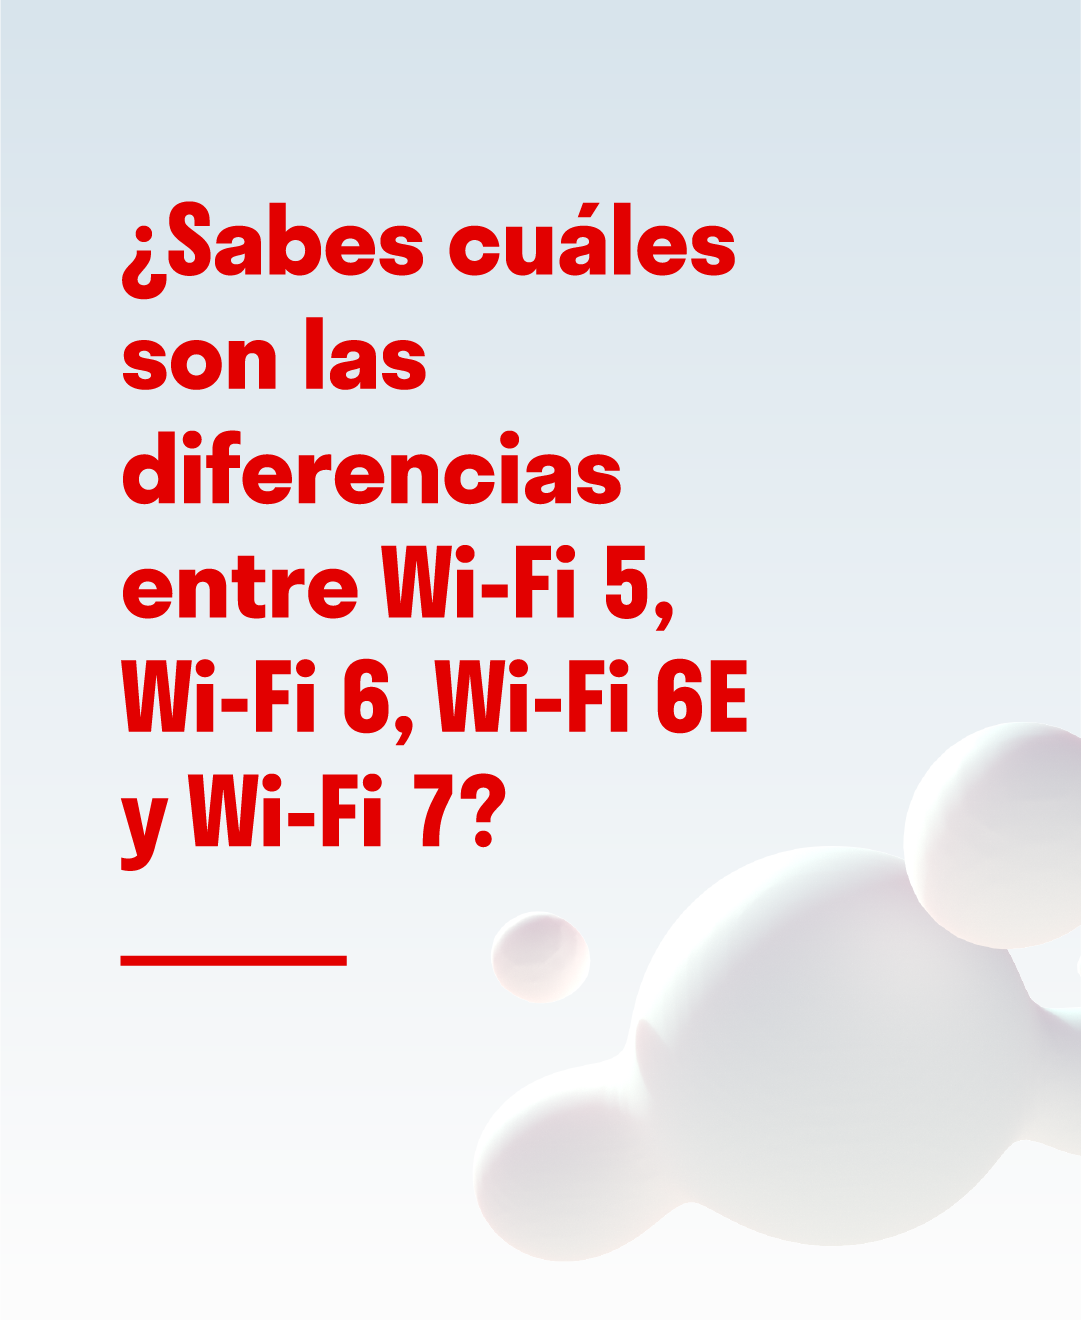 Comparativa entre versiones Wi-Fi